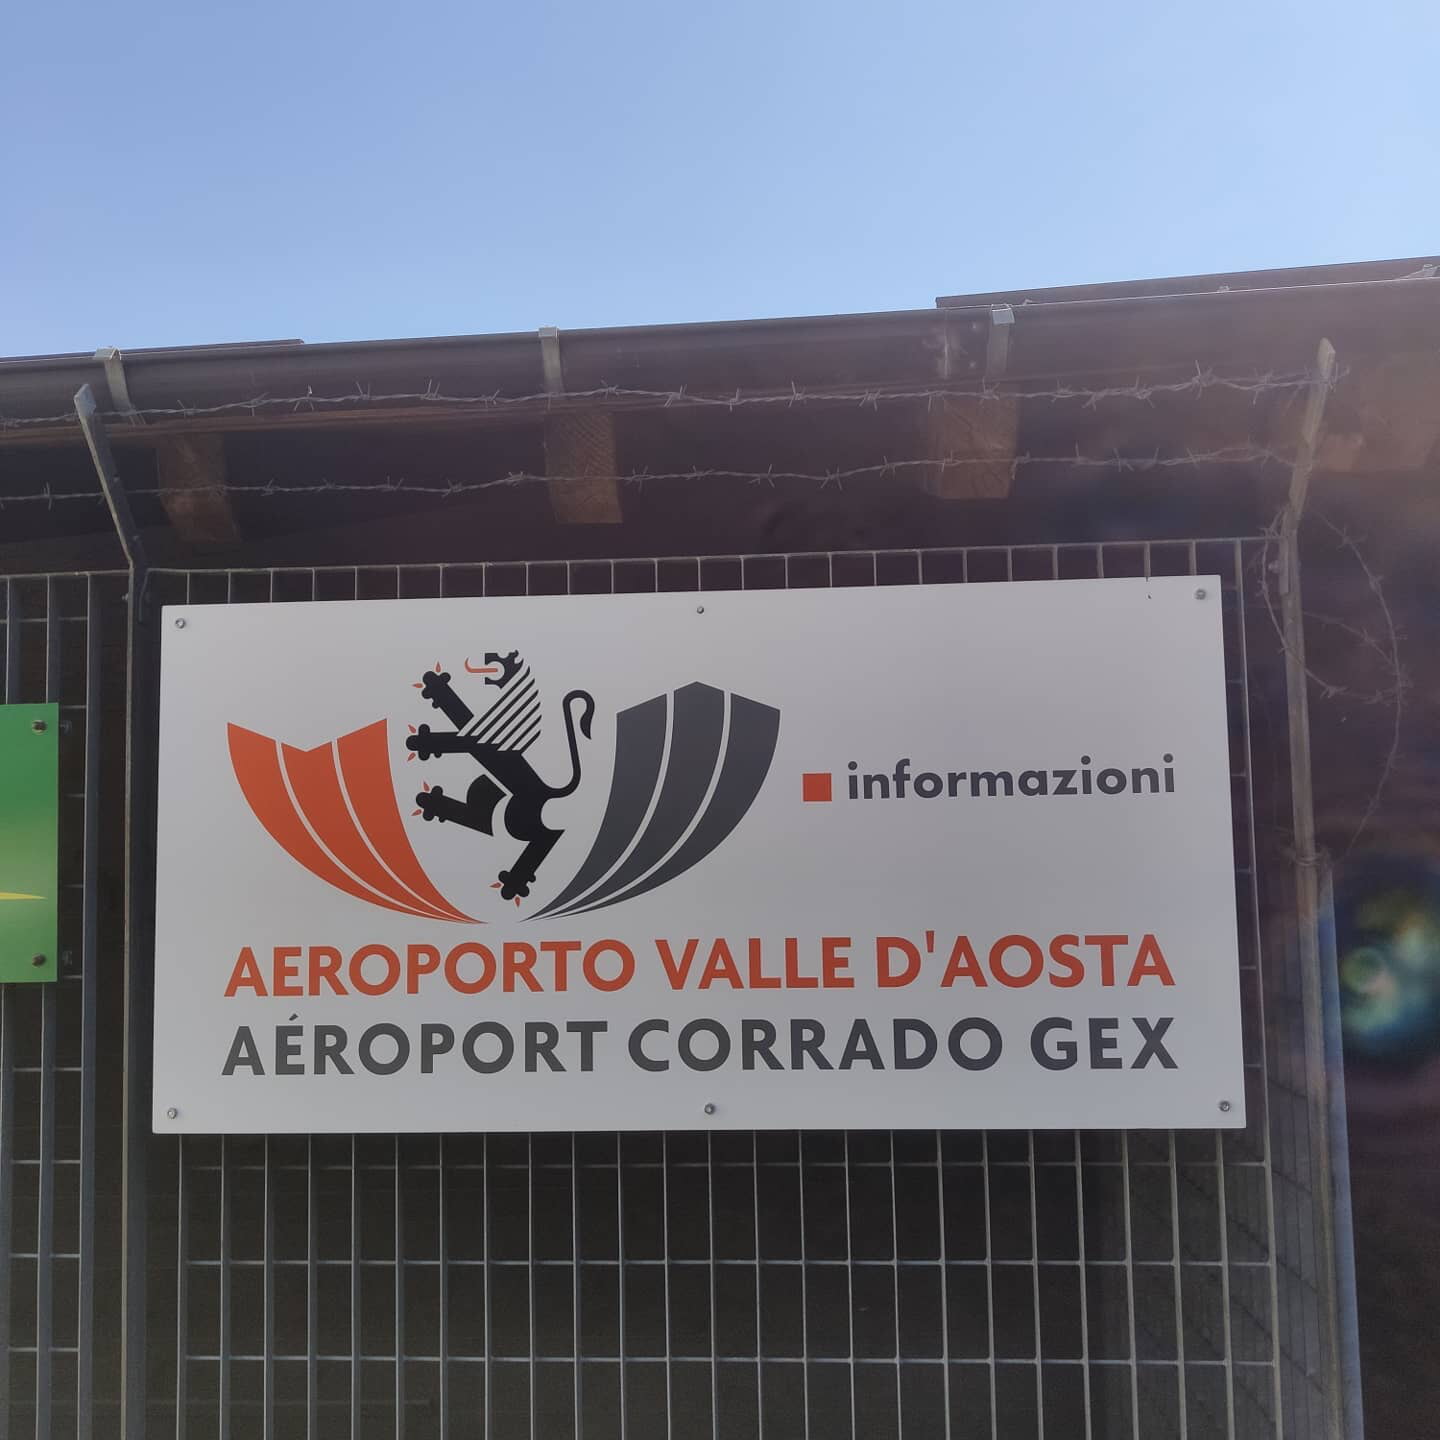 Aosta Havaalanı Araba Kiralama